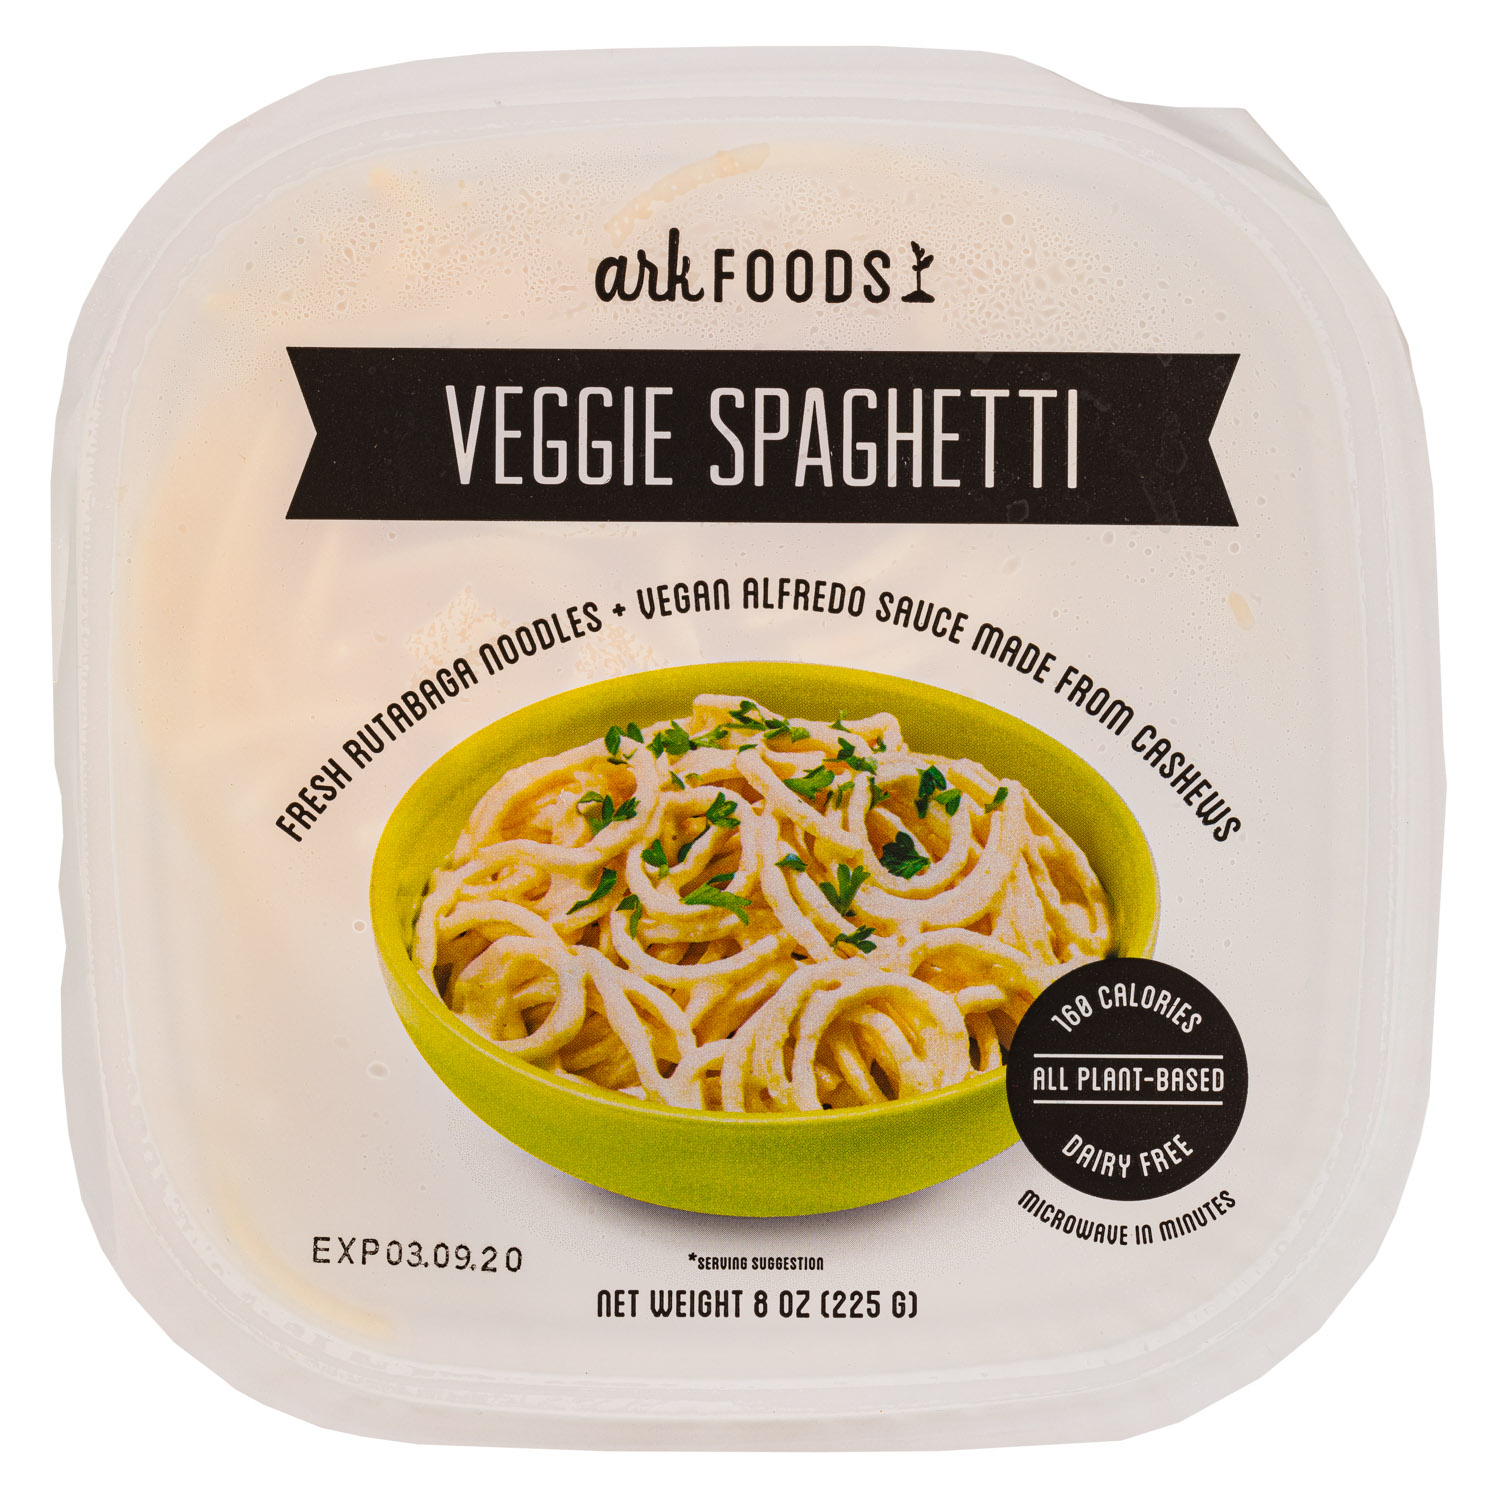 Fresh Rutabaga Noodles + Vegan Alfredo Sauce made from Cashews (2020)